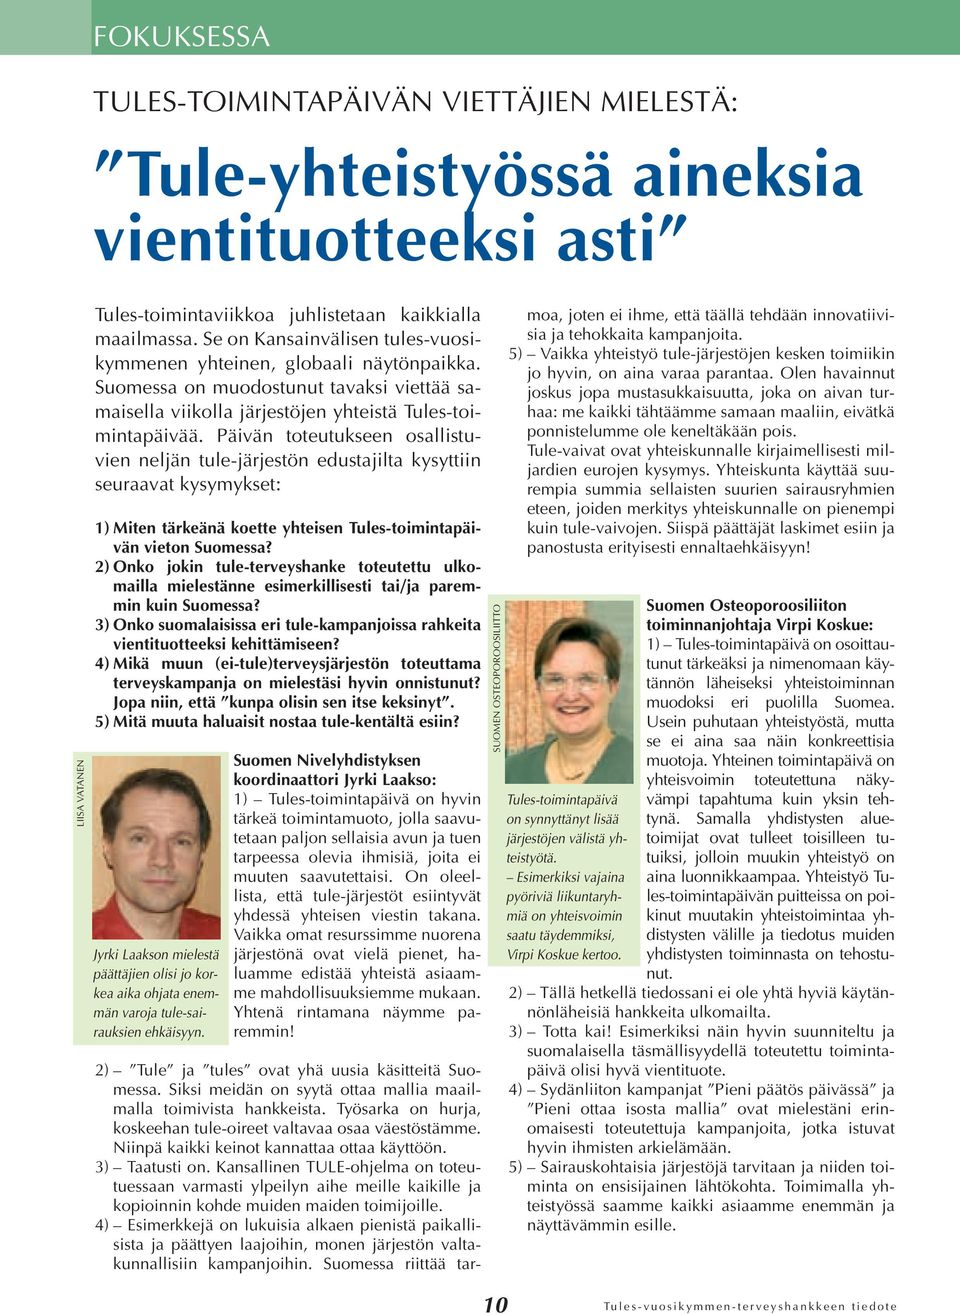 Päivän toteutukseen osallistuvien neljän tule-järjestön edustajilta kysyttiin seuraavat kysymykset: 1) Miten tärkeänä koette yhteisen Tules-toimintapäivän vieton Suomessa?